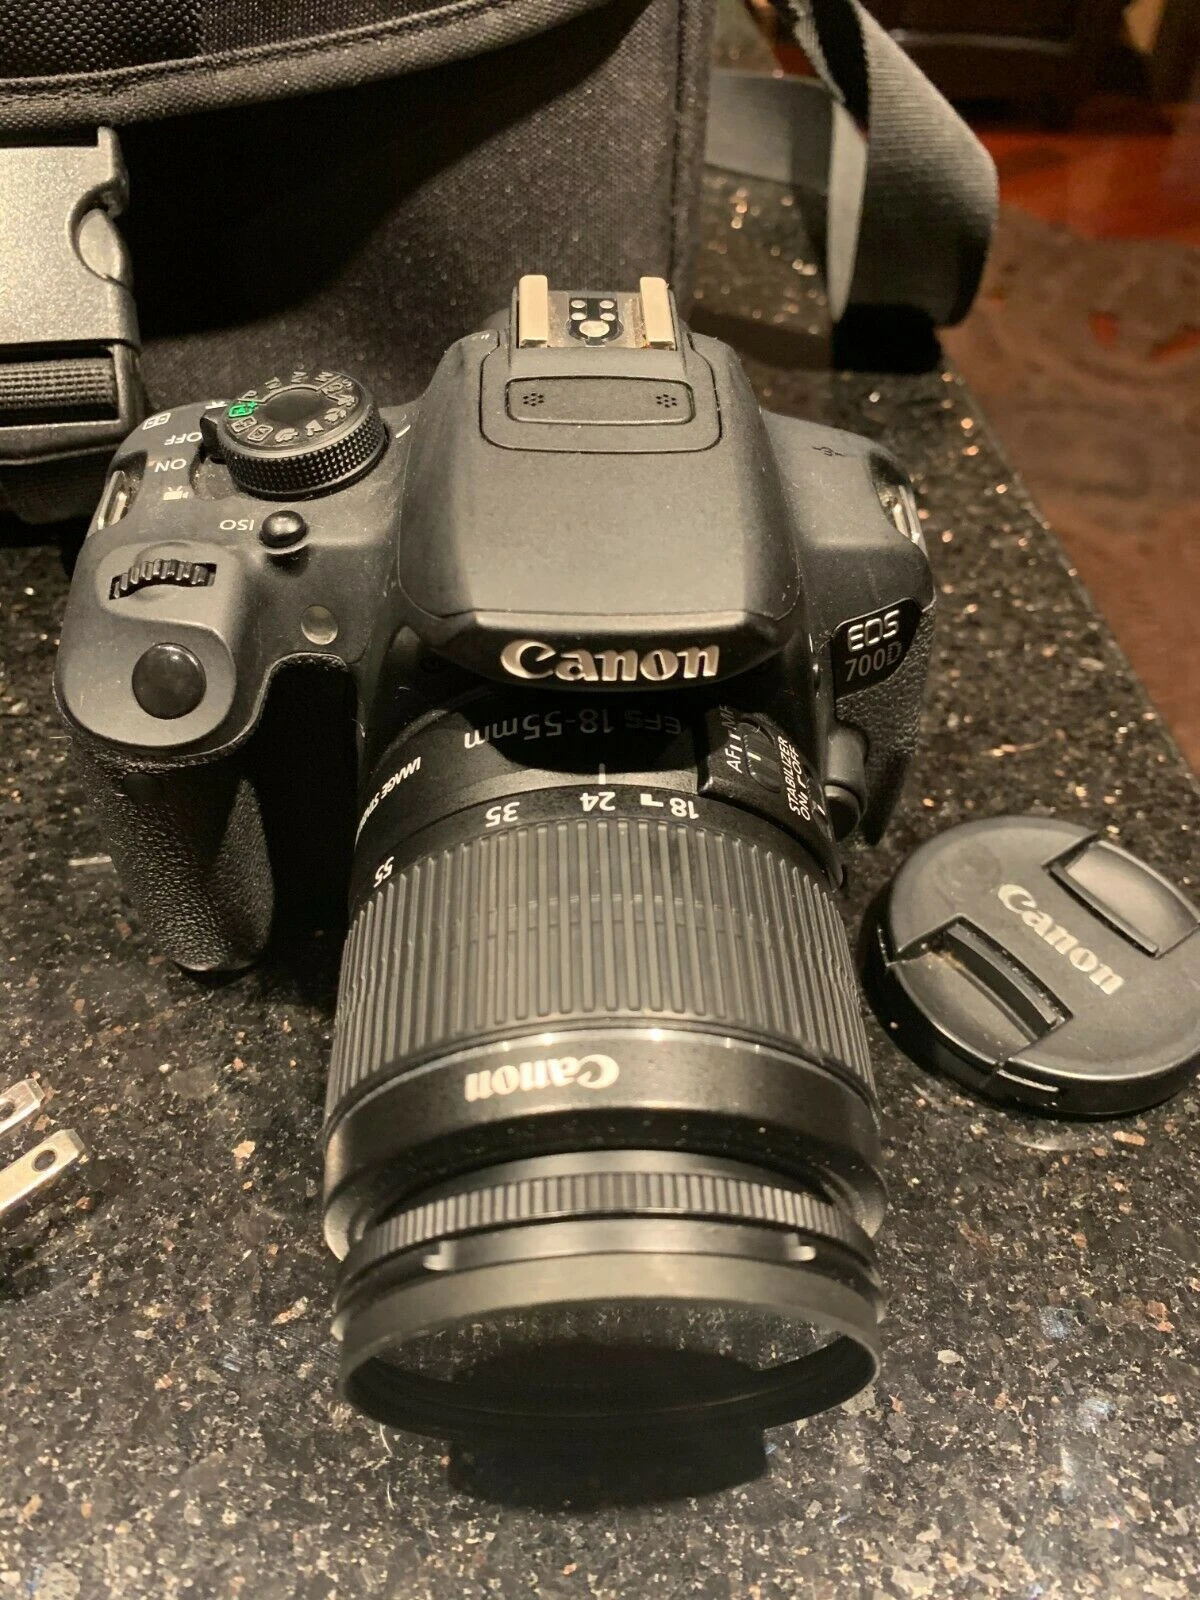 New original Cano-nS EOS-5D Mark IV Digital SLR Camera with 24-105mm f/4L II Lens bundle